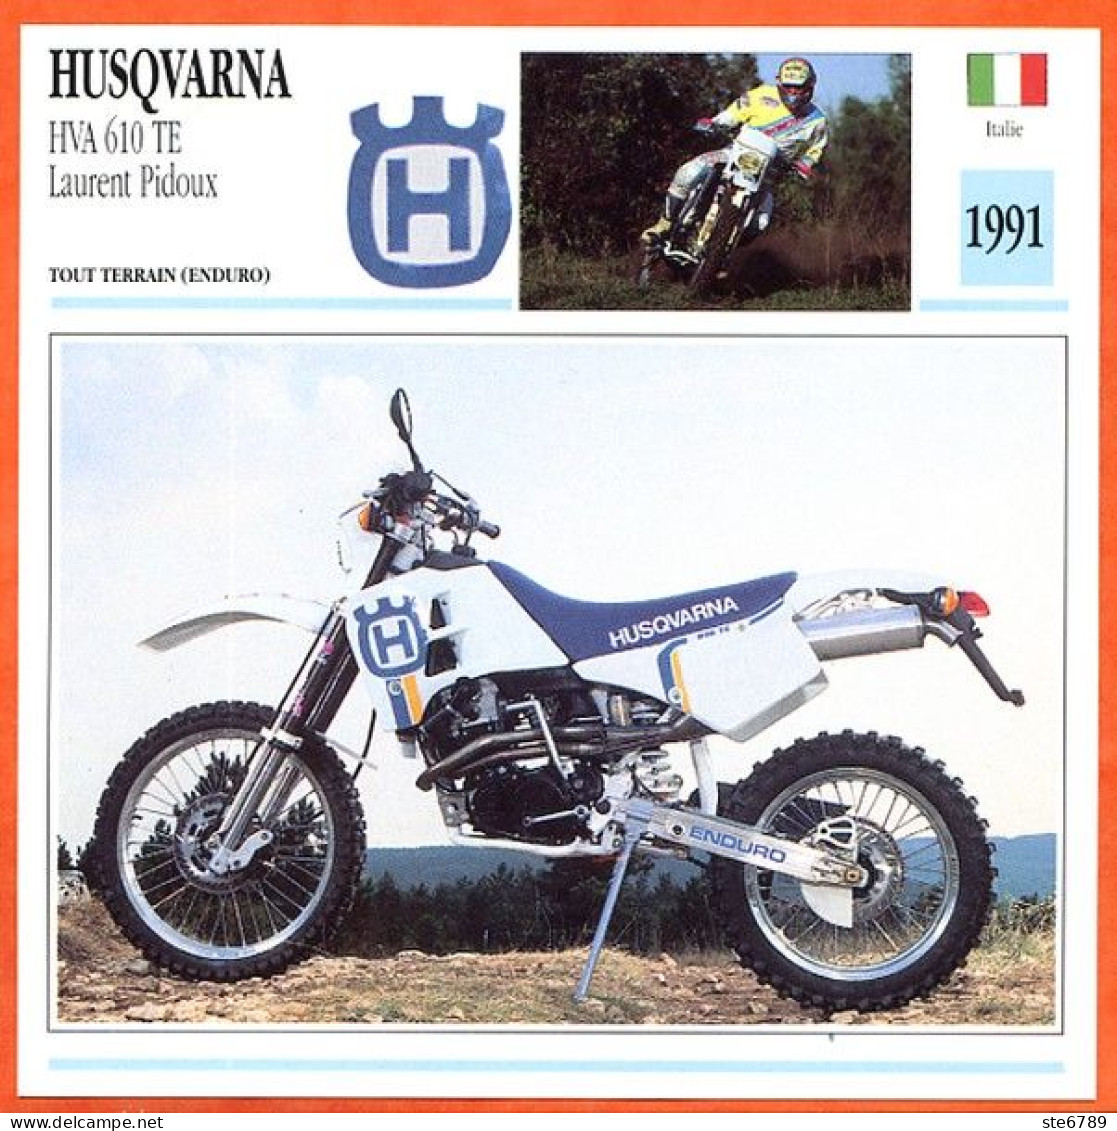 HUSQVARNA HVA 610 Pidoux 1991 Fiche Technique Moto - Sport